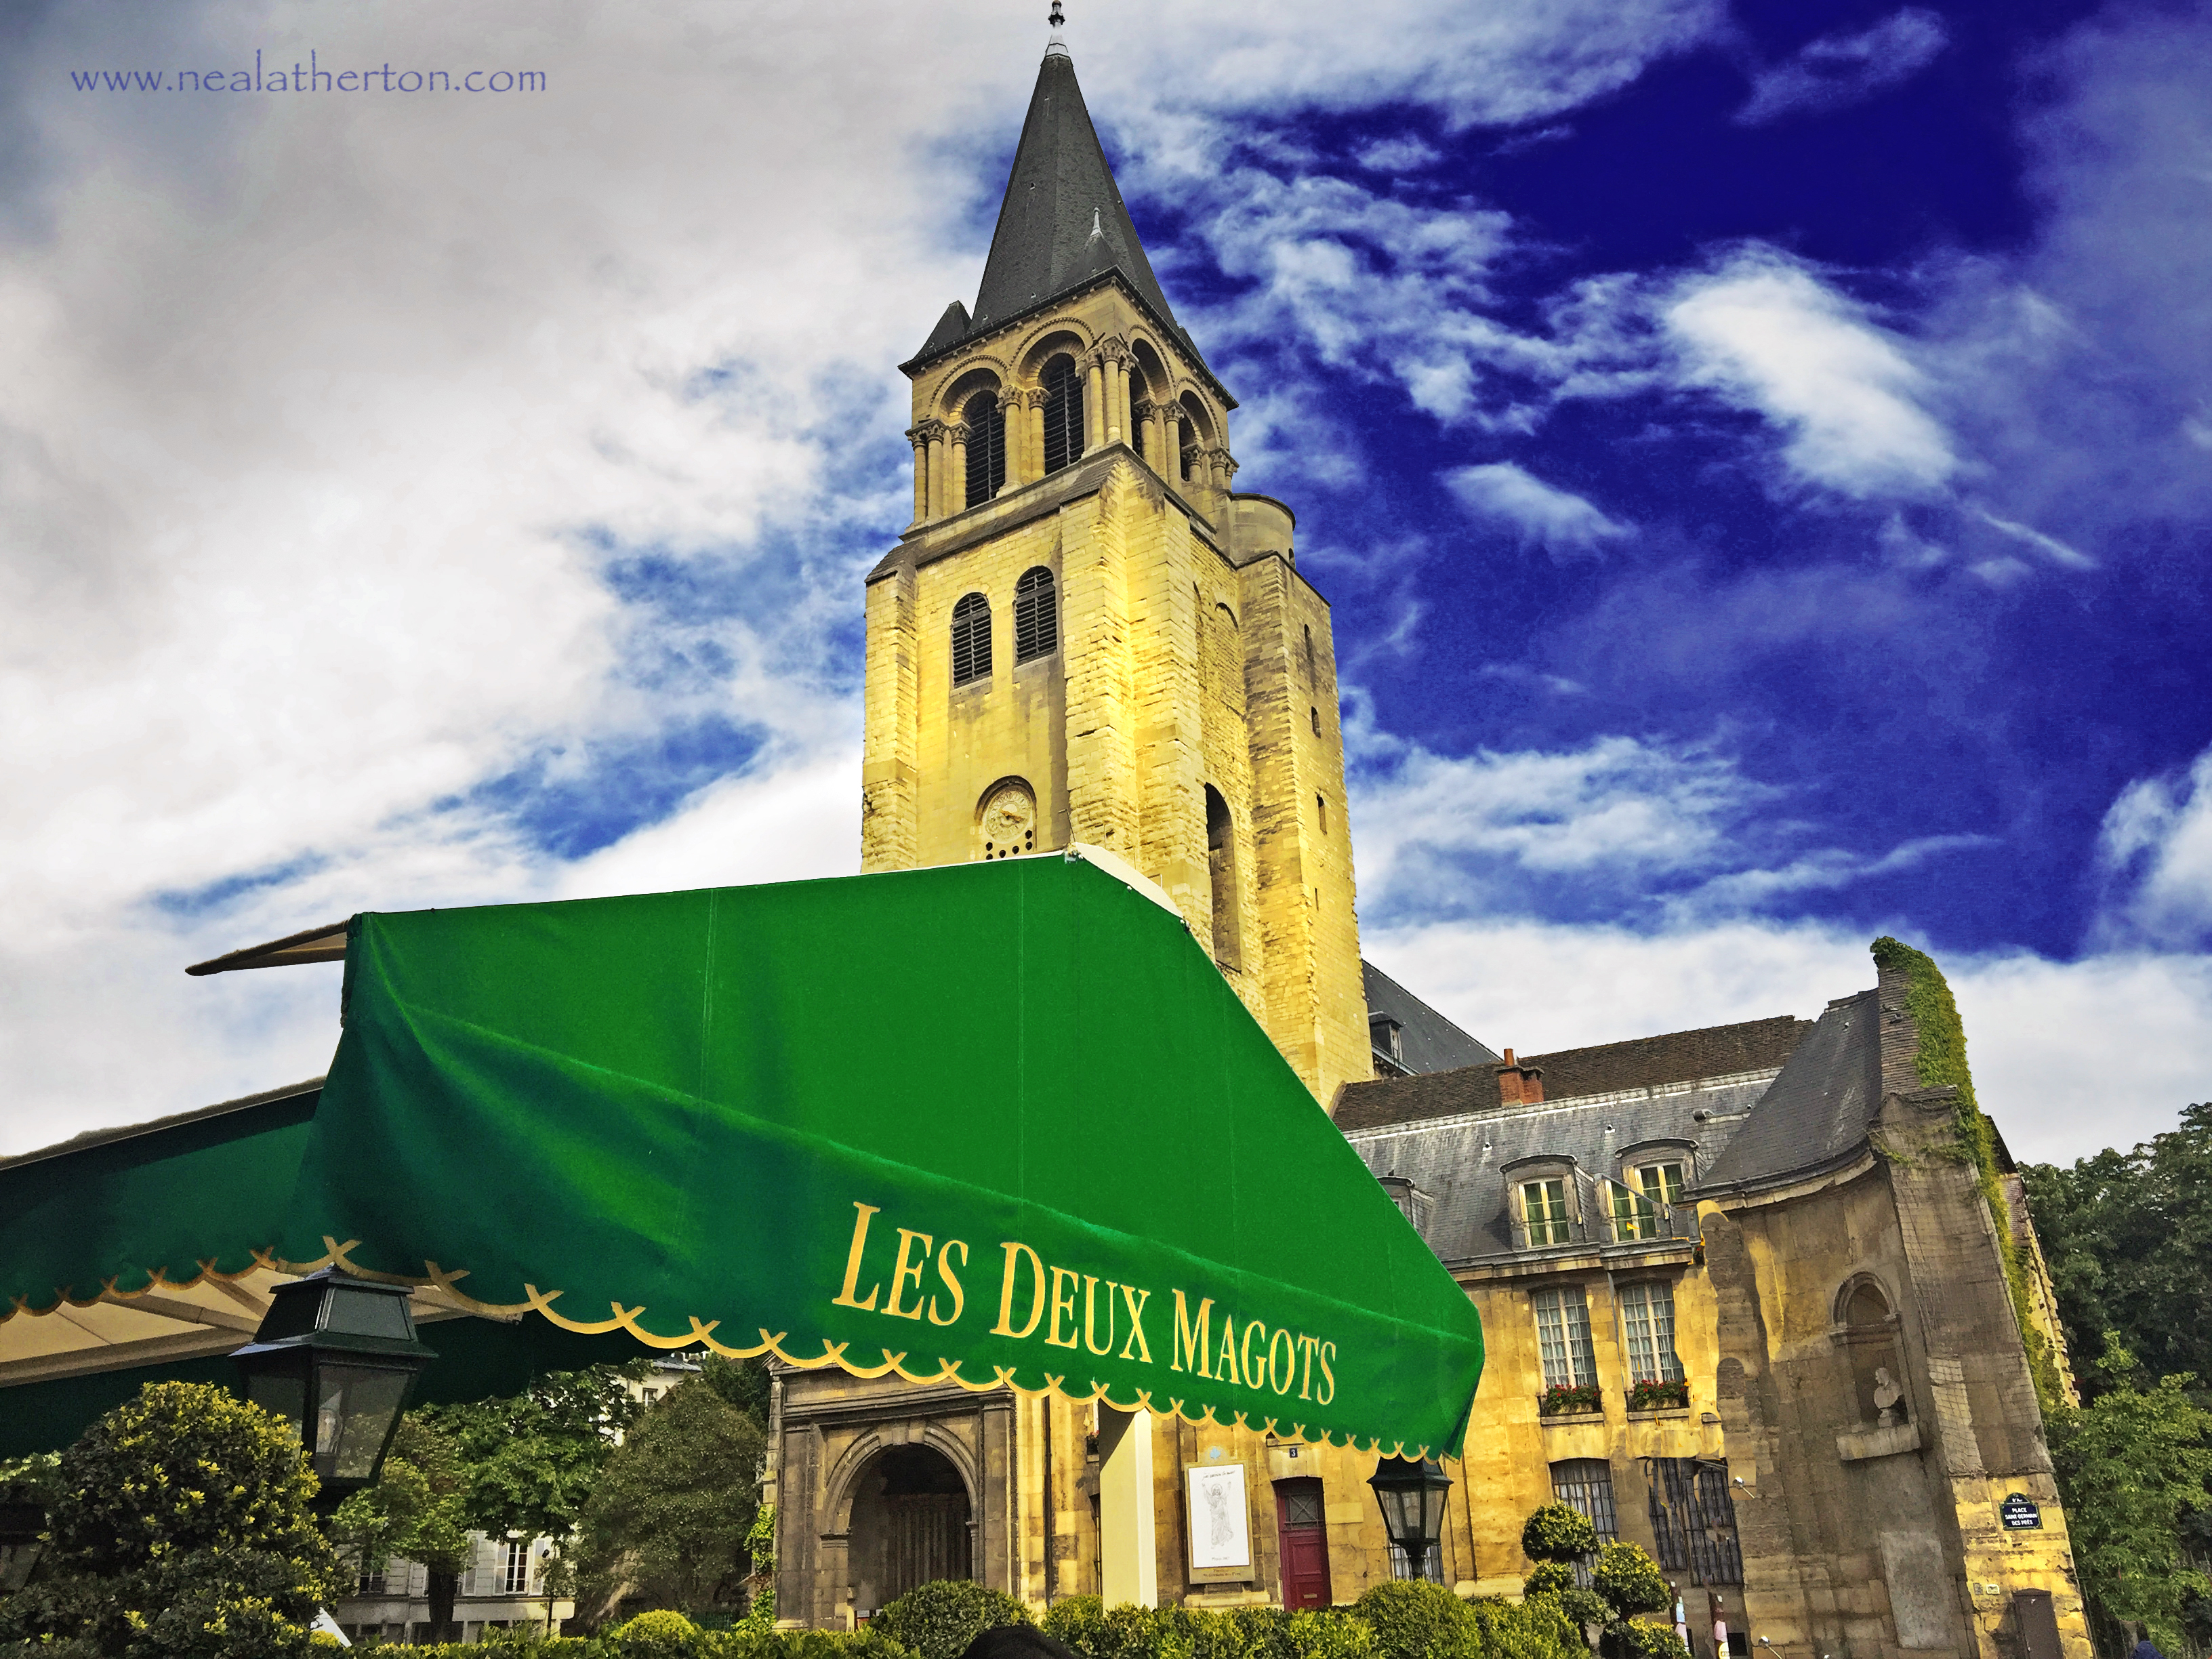 Alt="Les Deux Magots Cafe Paris France home of Artists and writers including Ernest Hemingway"